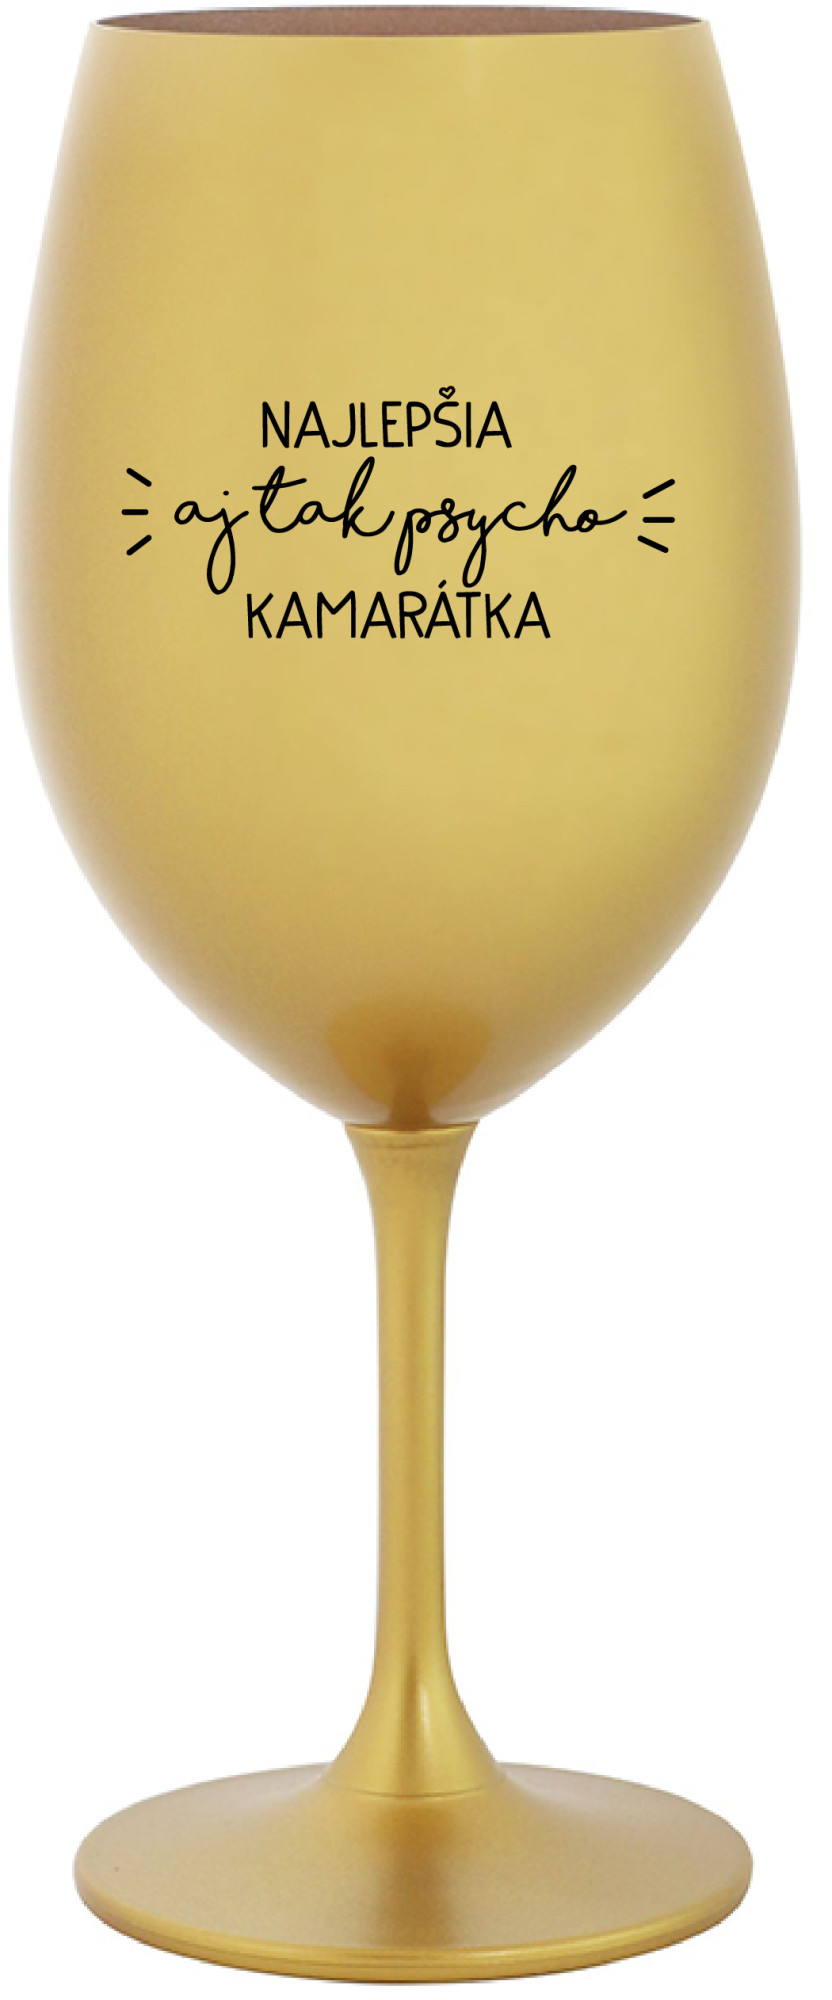 NAJLEPŠIA AJ TAK PSYCHO KAMARÁTKA - zlatá sklenice na víno 350 ml